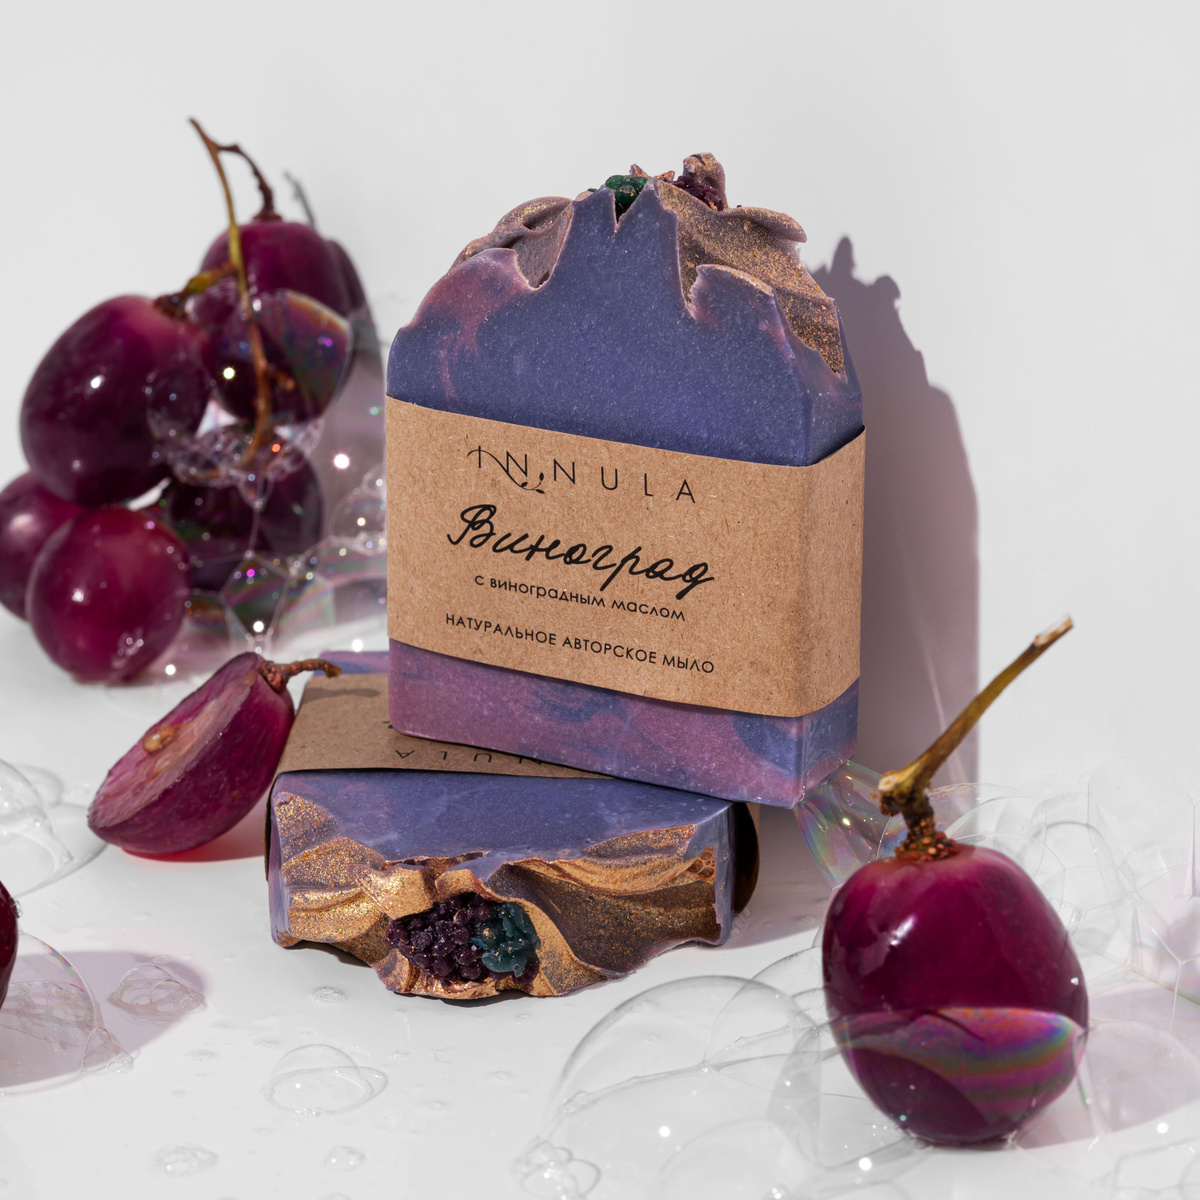 Мыло ручной работы "Виноград". Натуральное мыло с маслами винограда, оливы, карите, а также с добавлением пудры из ягод и эфирным маслом винограда.